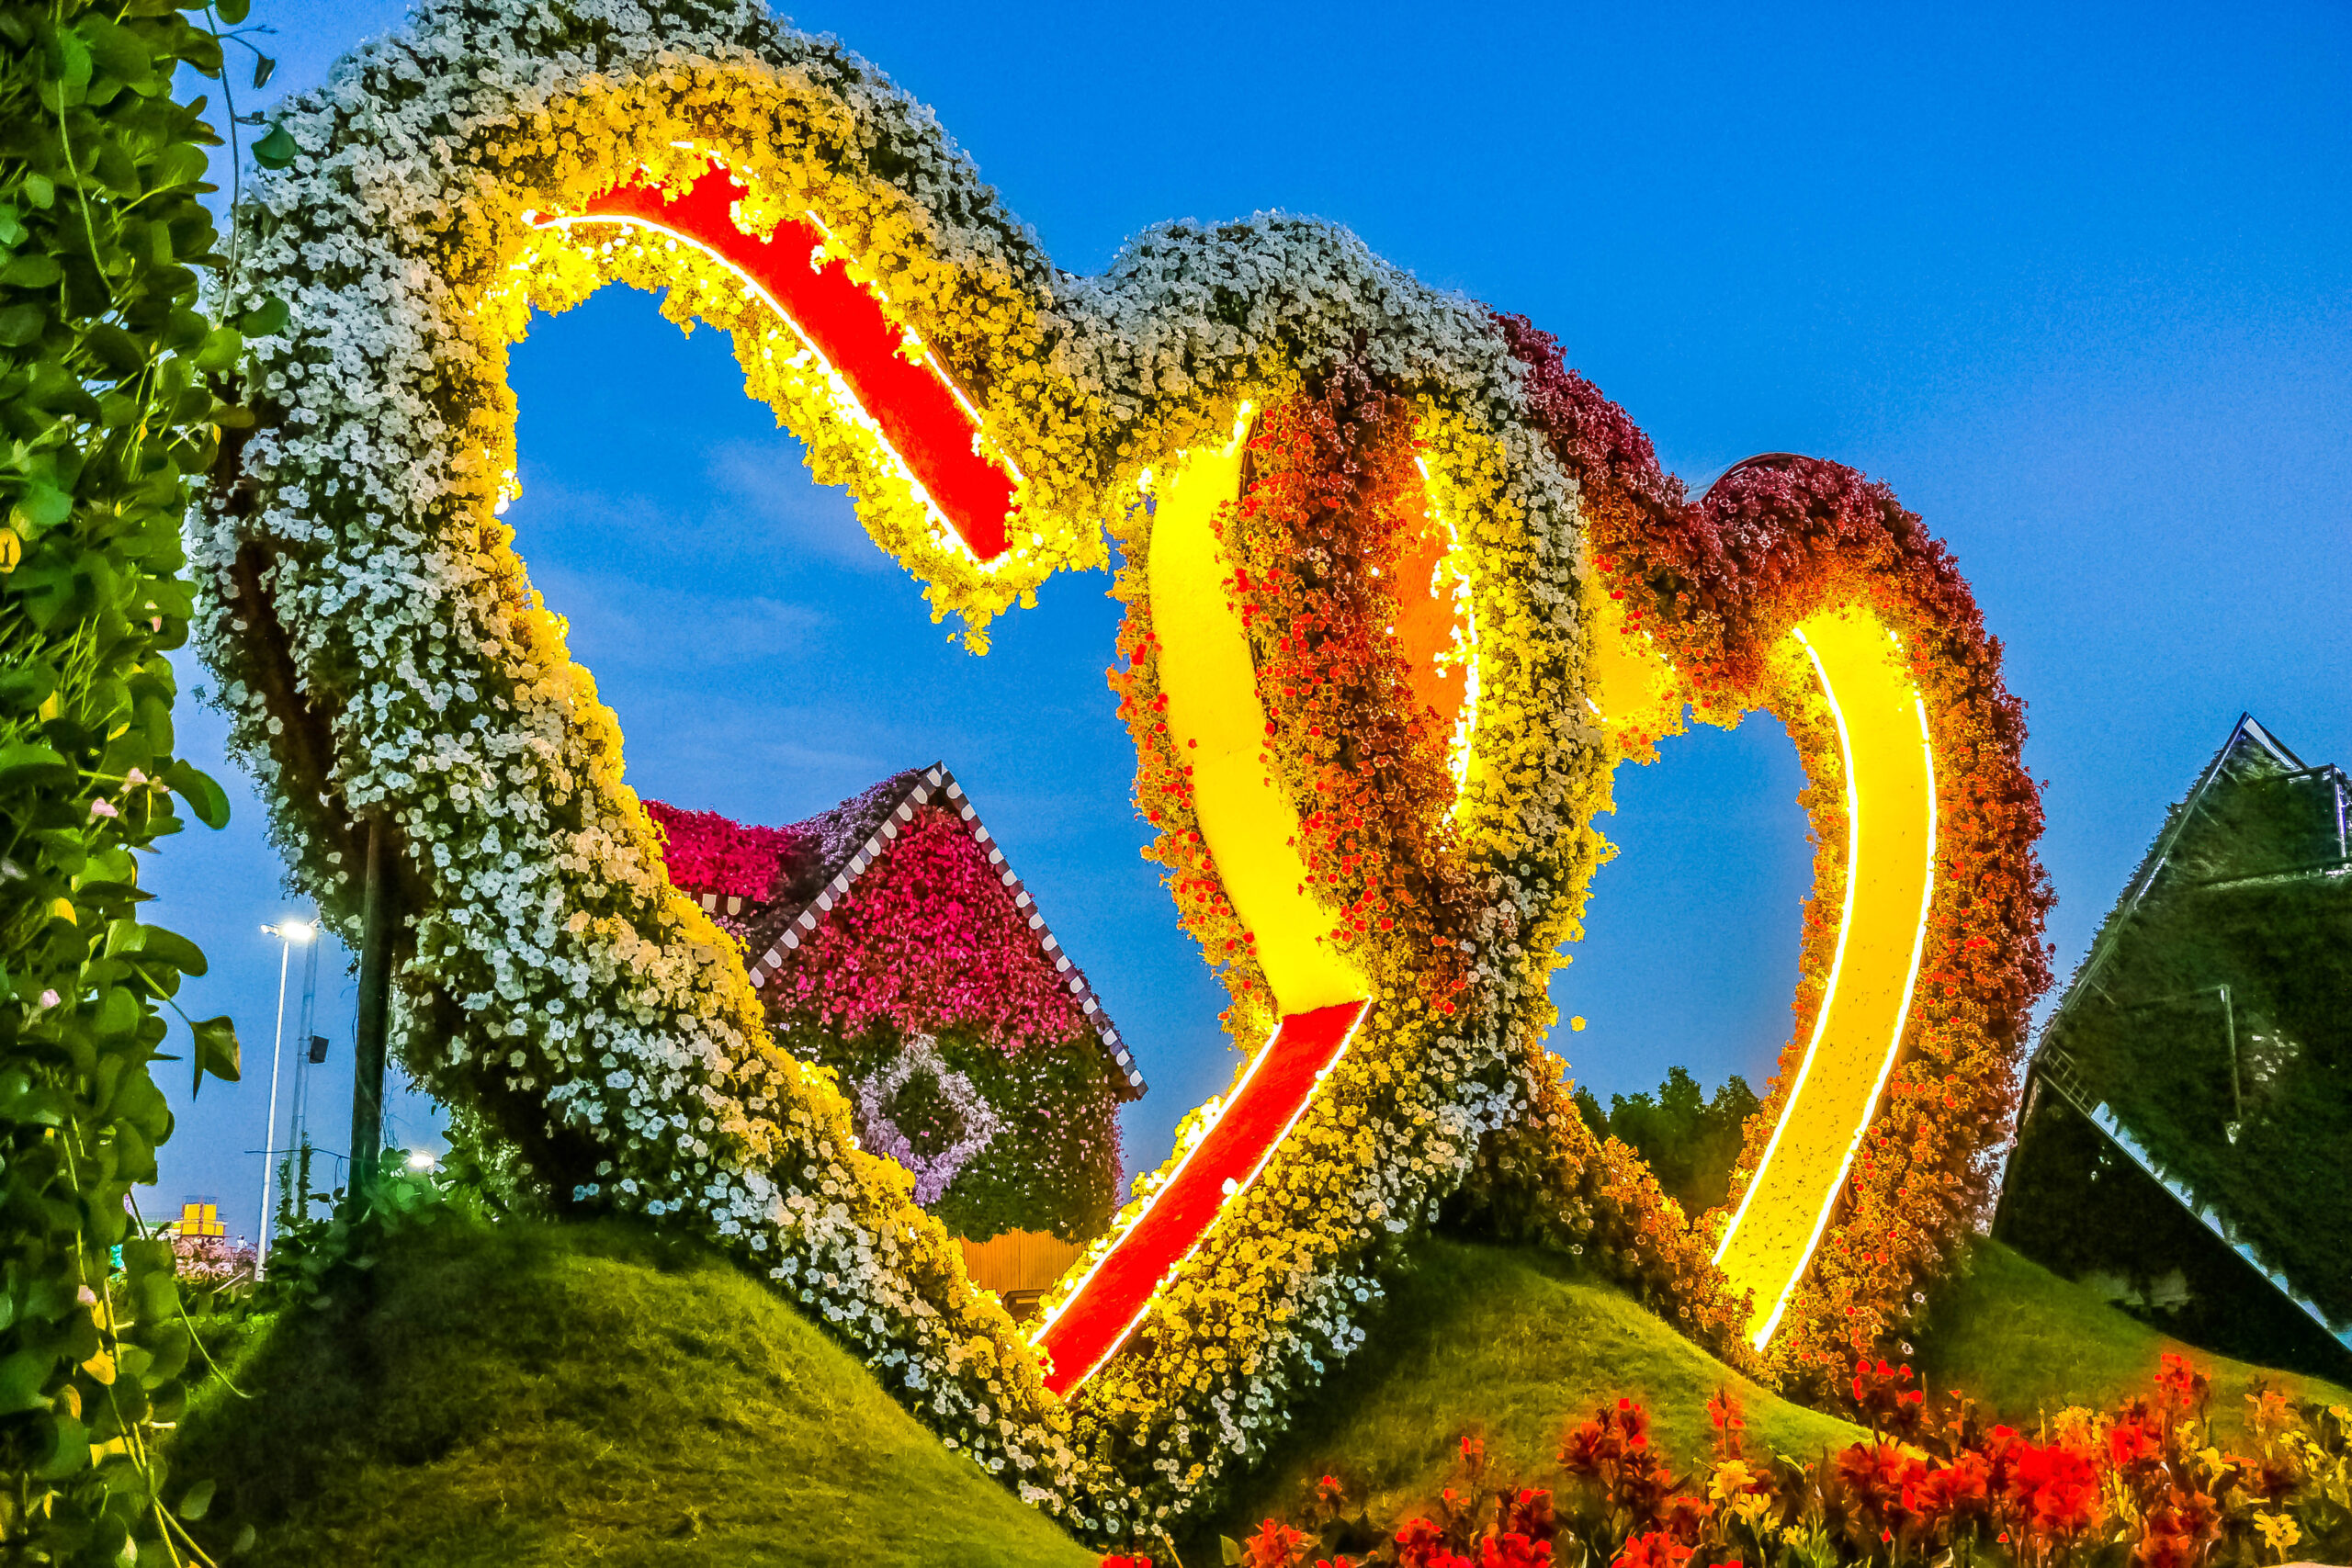 Dubai Miracle Garden - Flower hearts